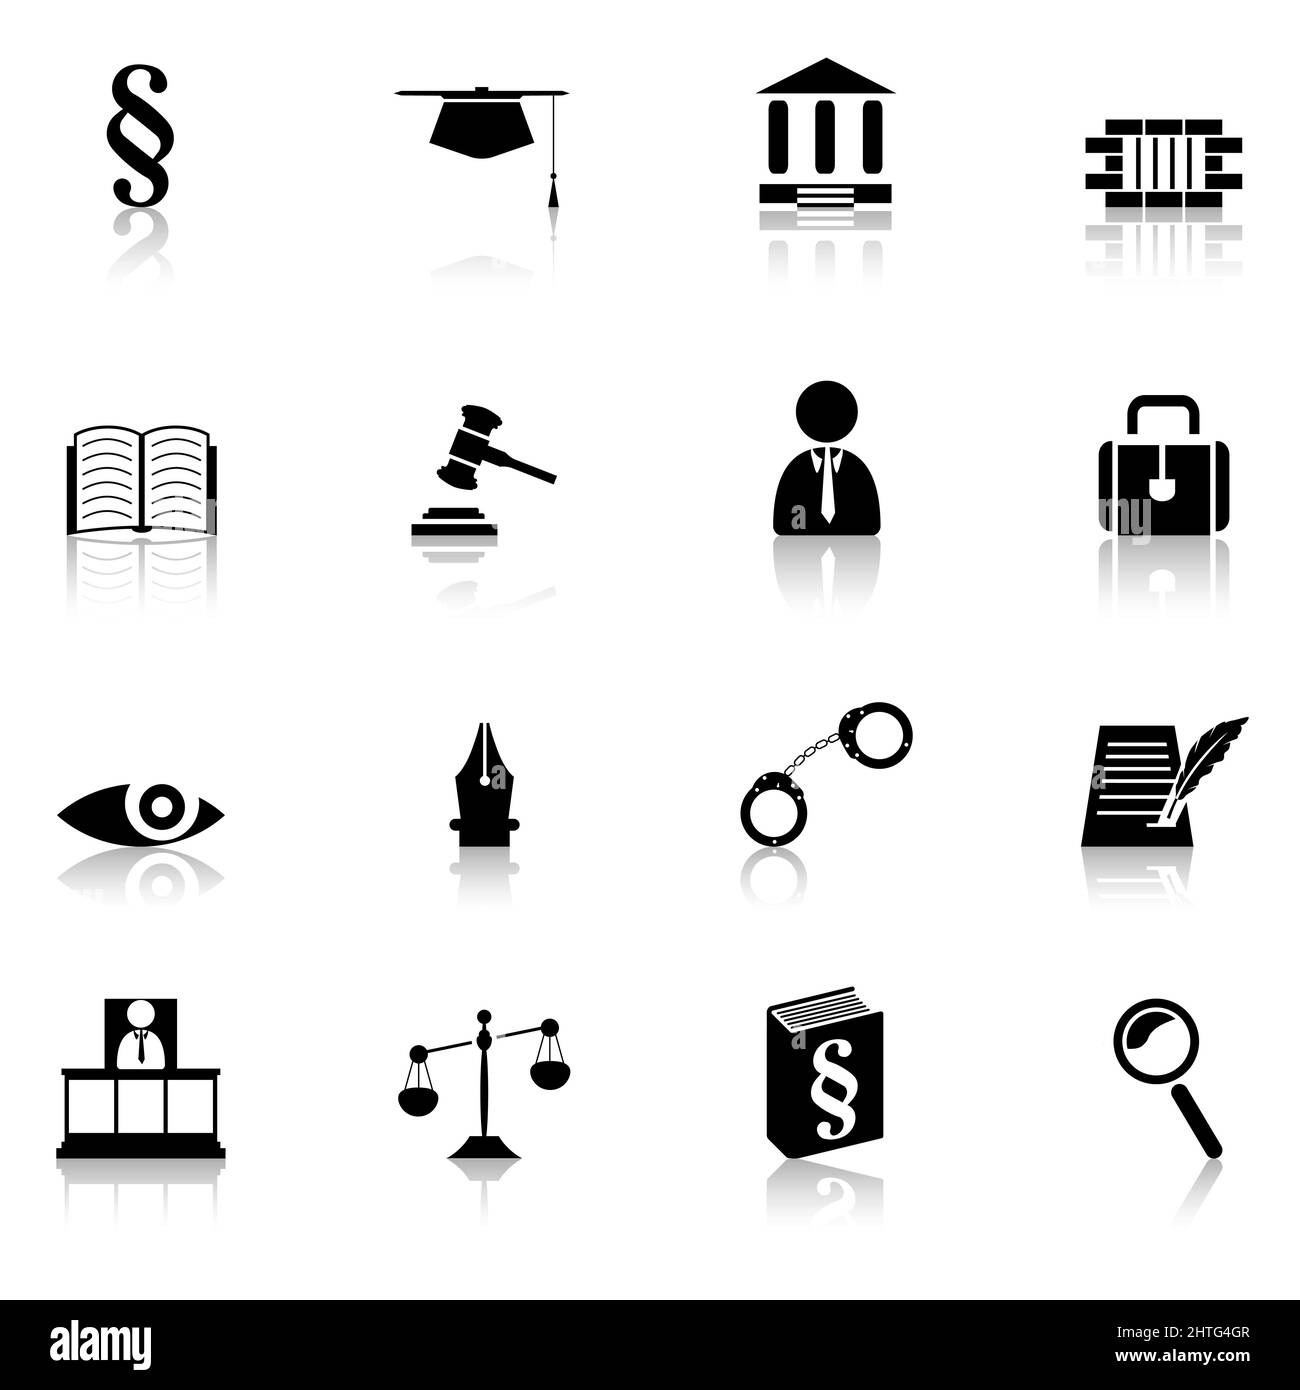 Illustrazione digitale di icone isolate in bianco e nero a tema giurisdizione Foto Stock